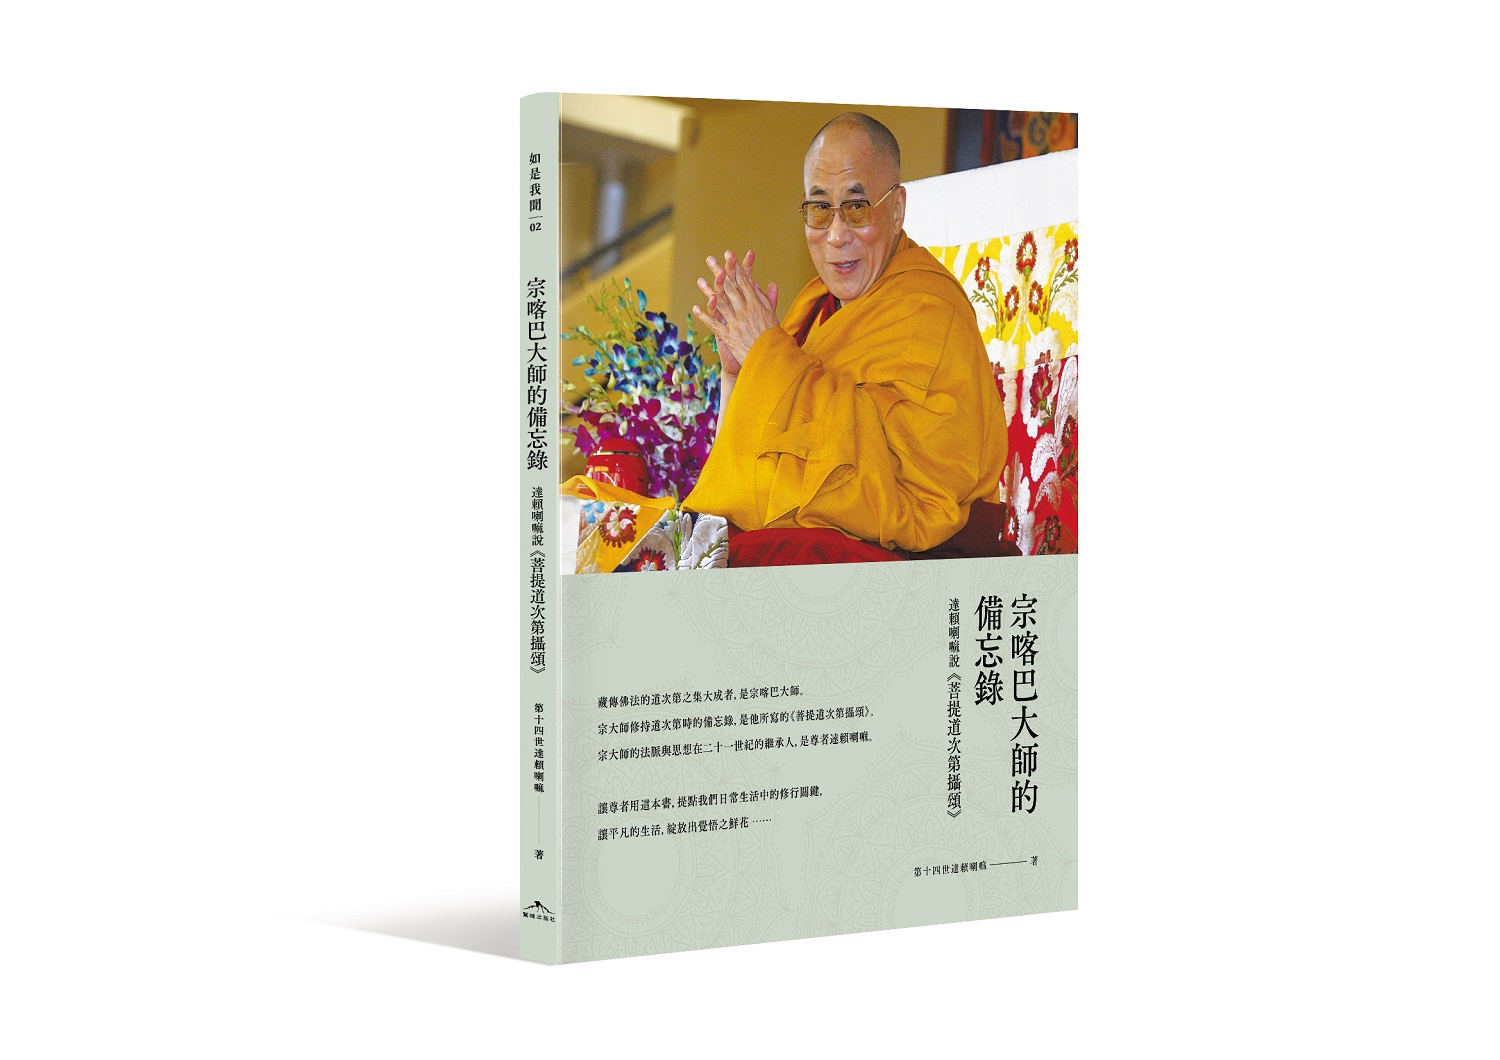 宗喀巴大師的備忘錄：達賴喇嘛說《菩提道次第攝頌》